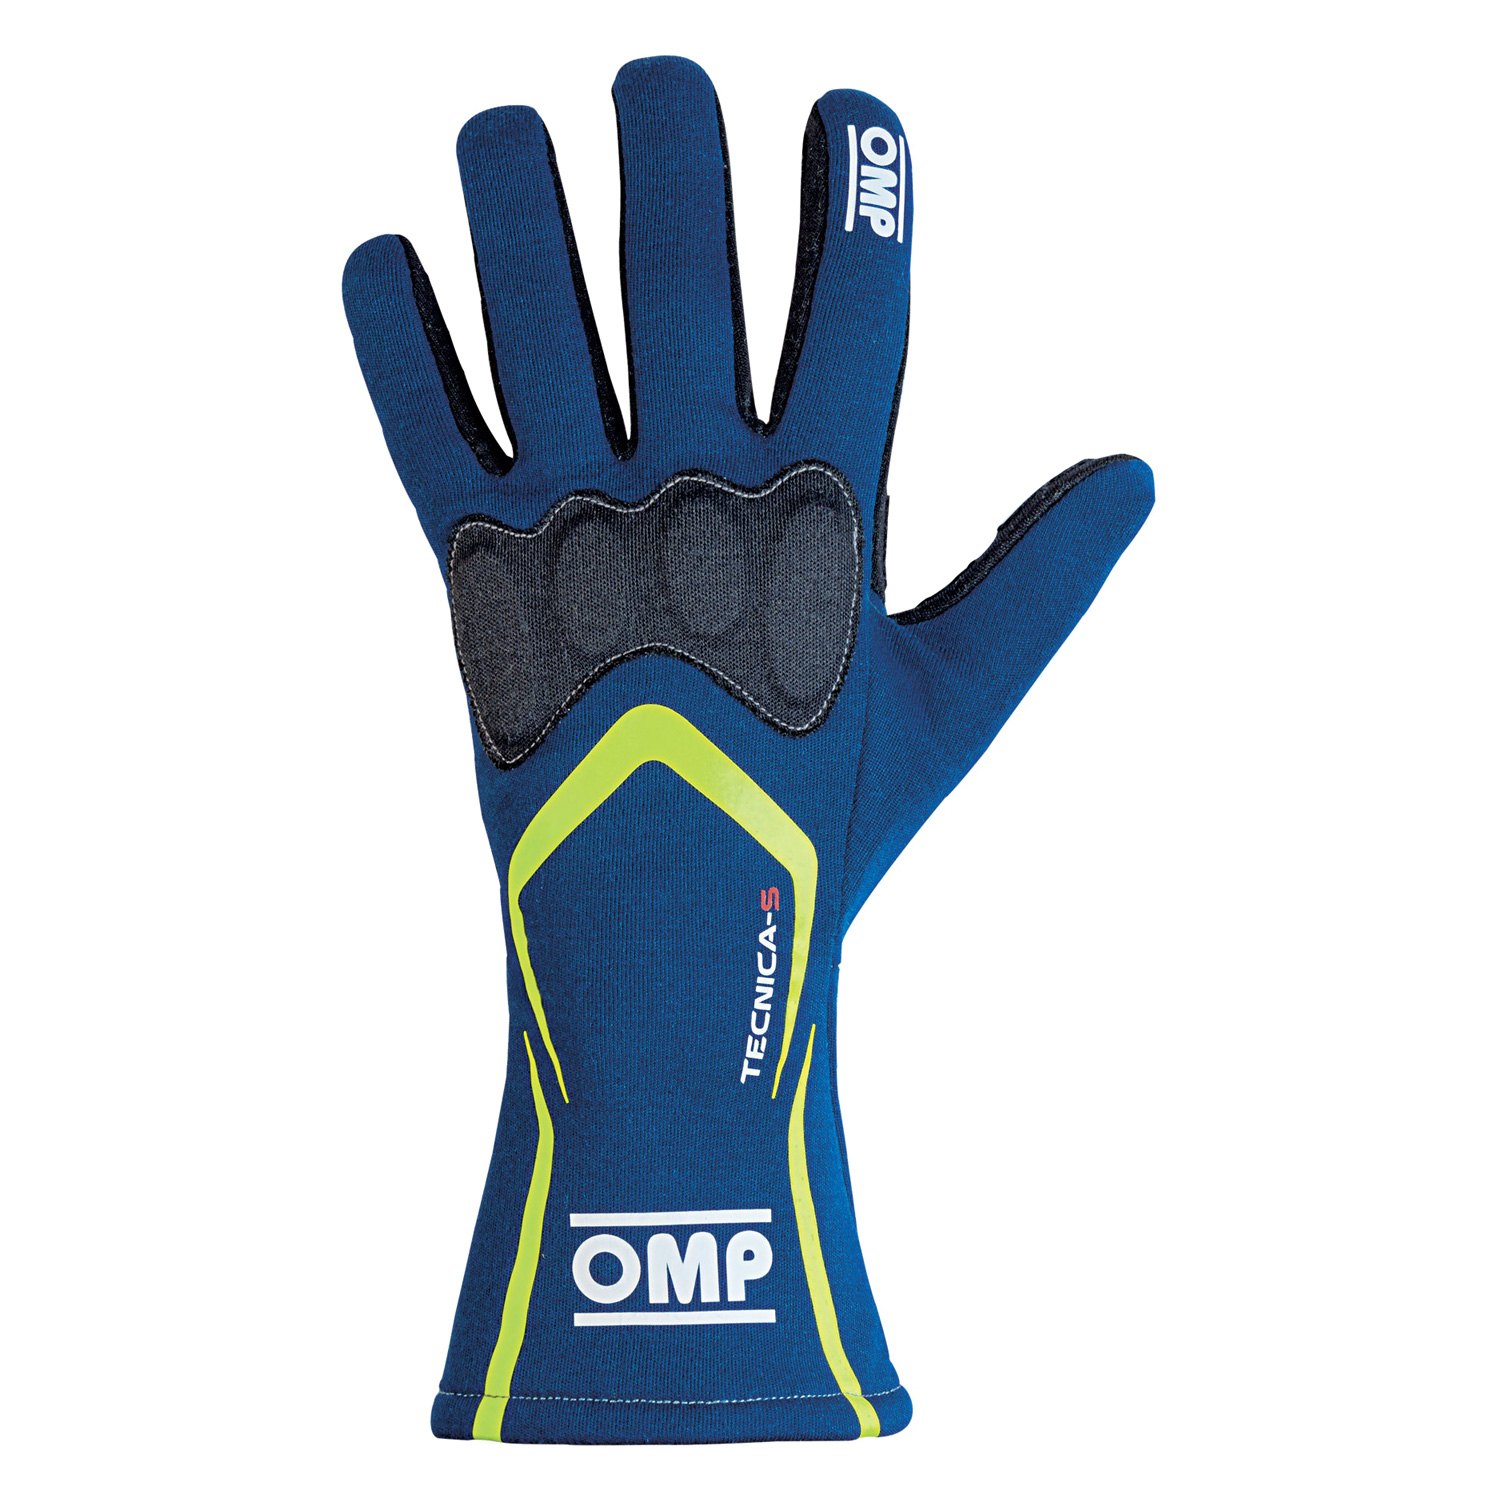 Omp Glove Size Chart